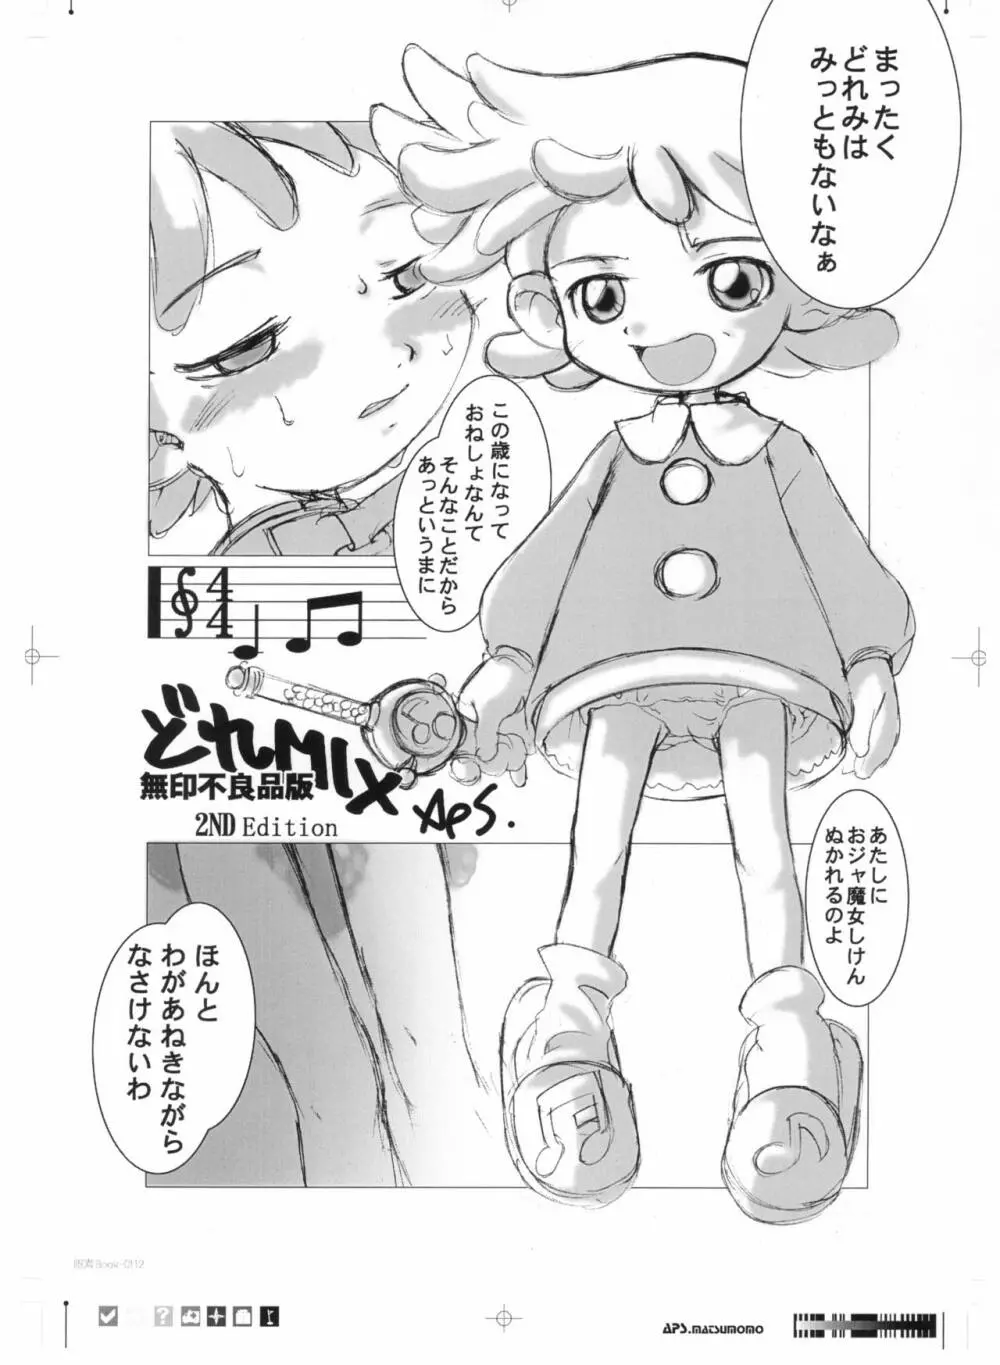 画素BooK 原稿用紙 キッズアニメトロニカ -0112 22ページ